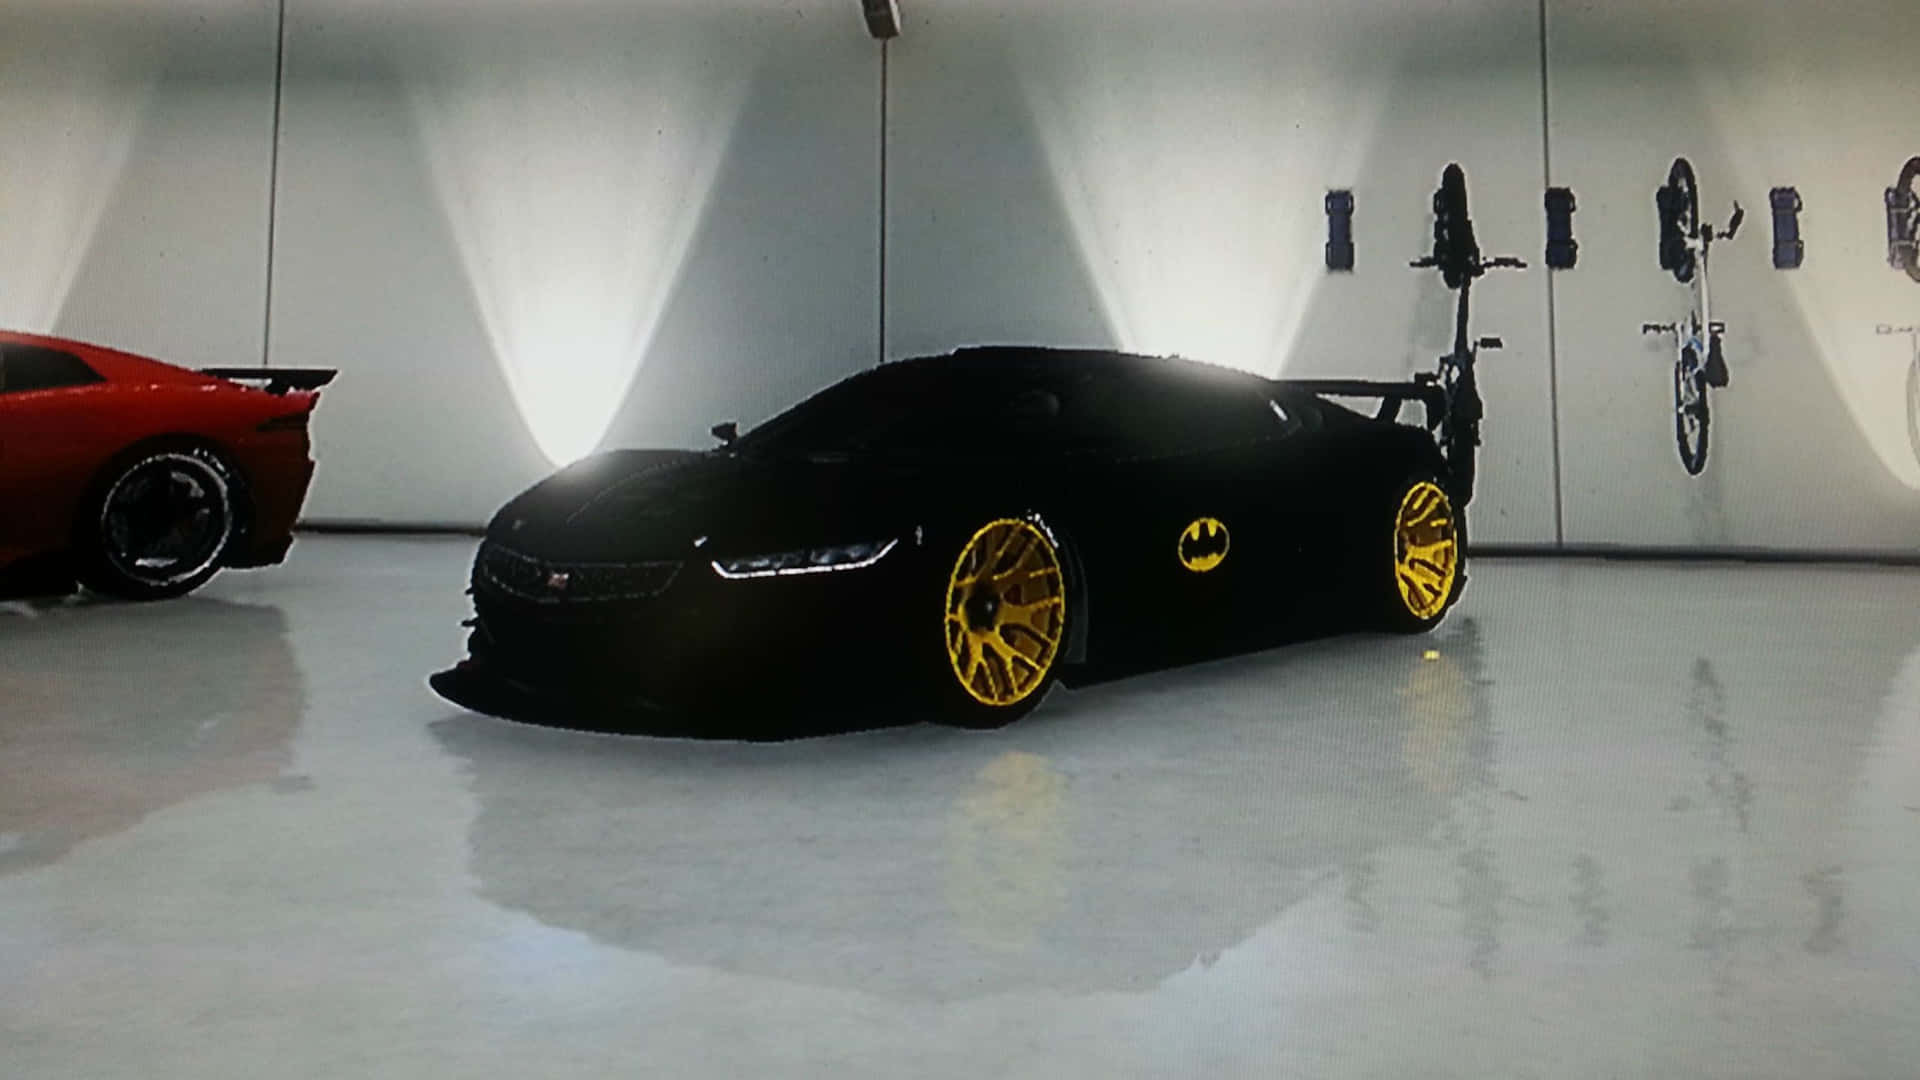 Batman Monster Car Yellow Wheels Wallpaper